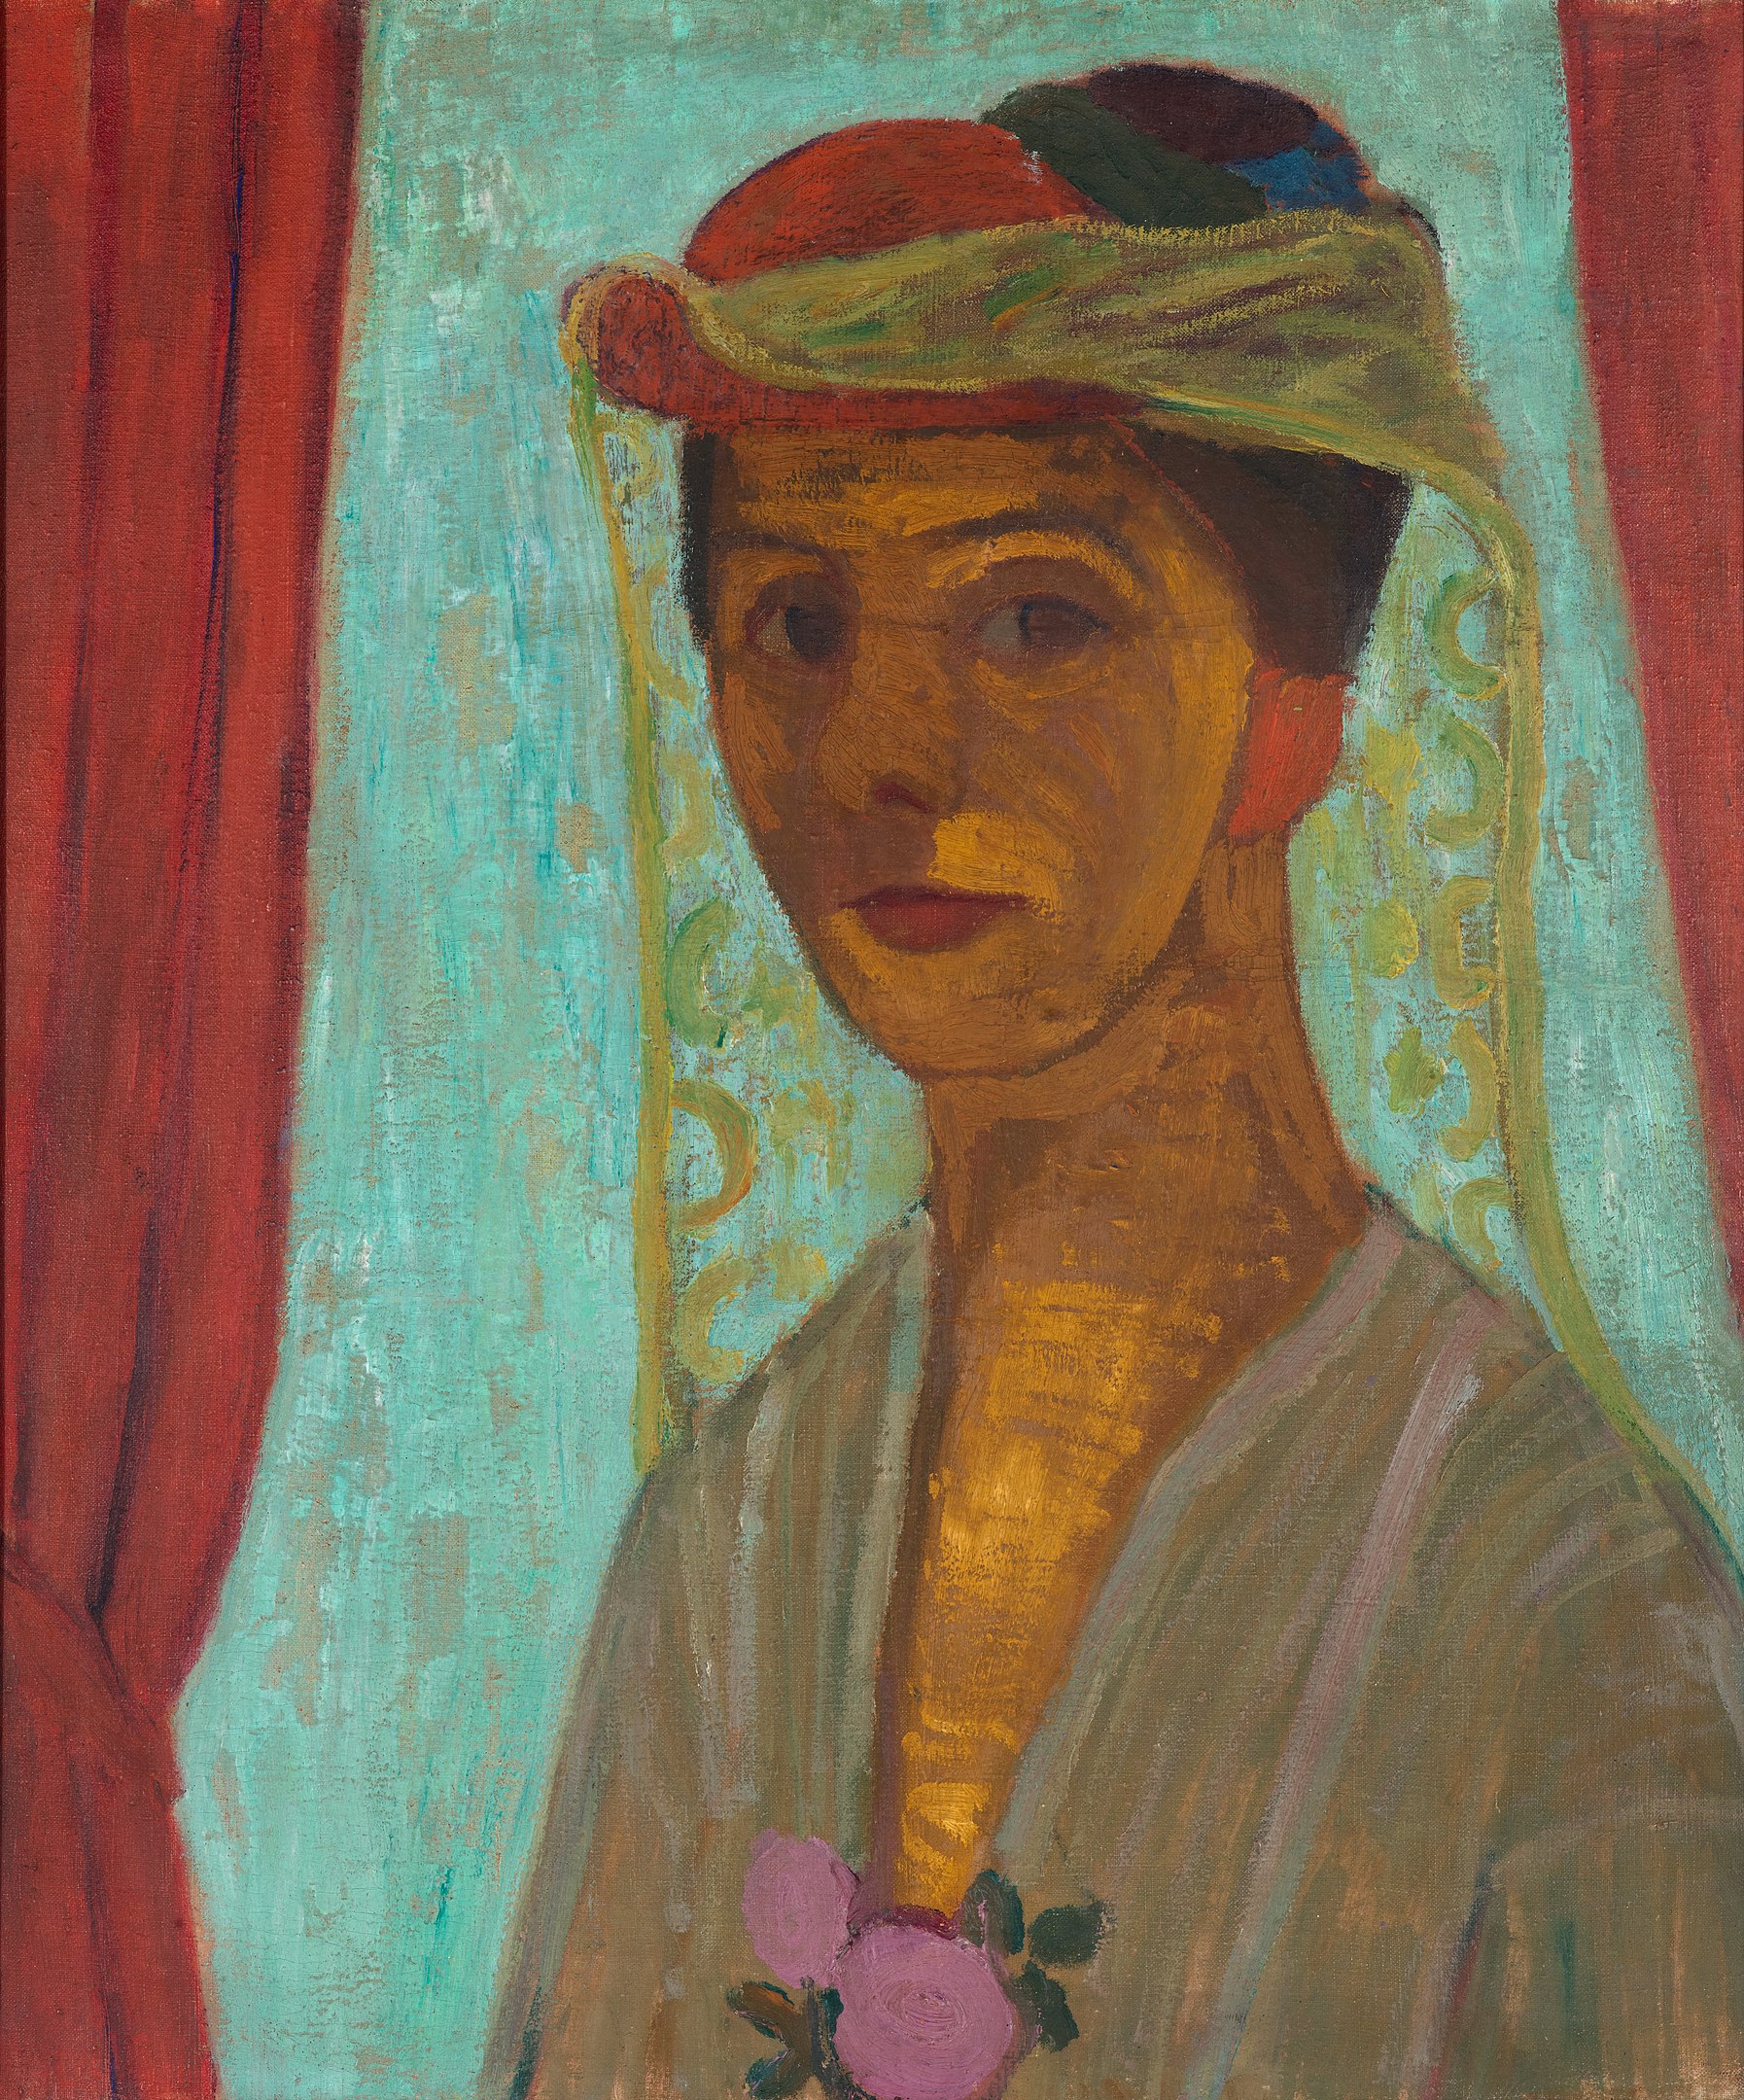 Autoportret z kapeluszem i woalką by Paula Modersohn-Becker - 1906/1907 r. - 79,8 x 89,6 cm 